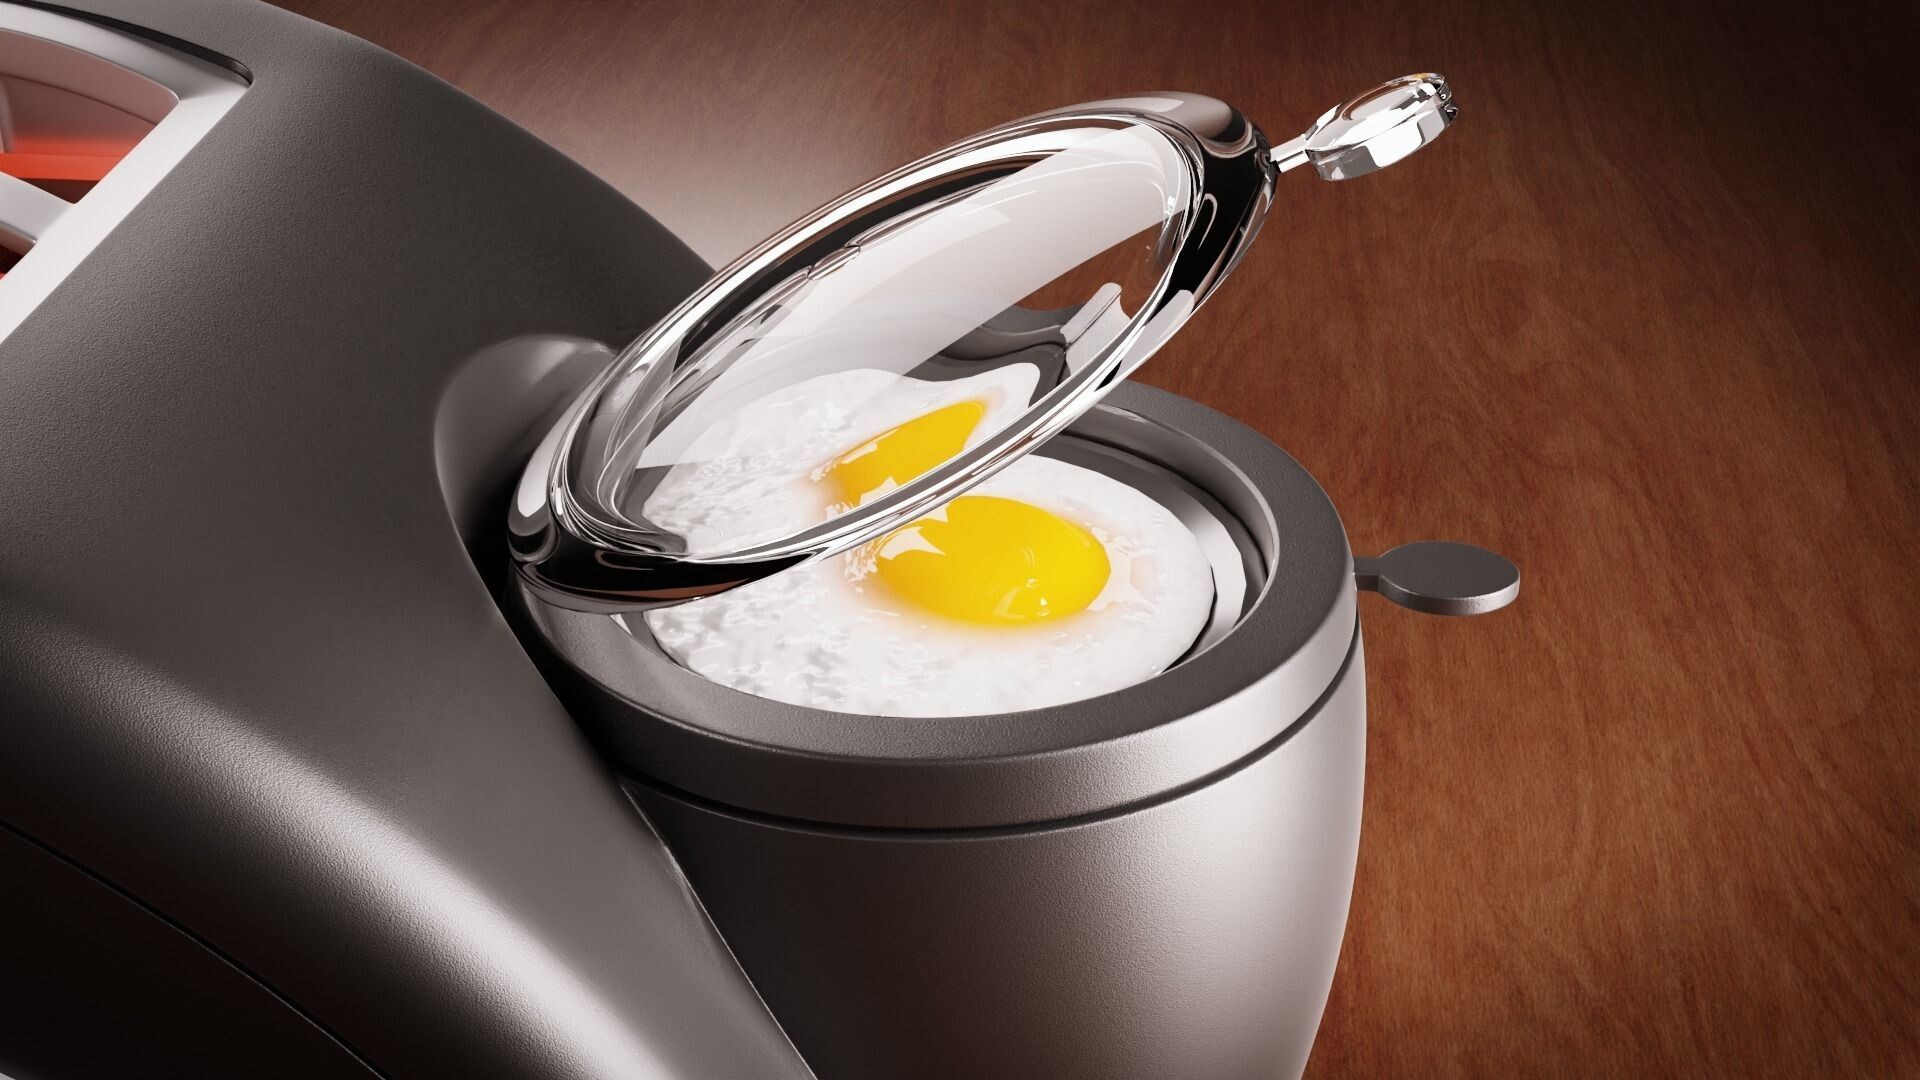 https://cdna.artstation.com/p/assets/images/images/054/985/658/large/vishal-saini-west-bend-toaster-with-egg-cooker-3d-model-02.jpg?1665841152